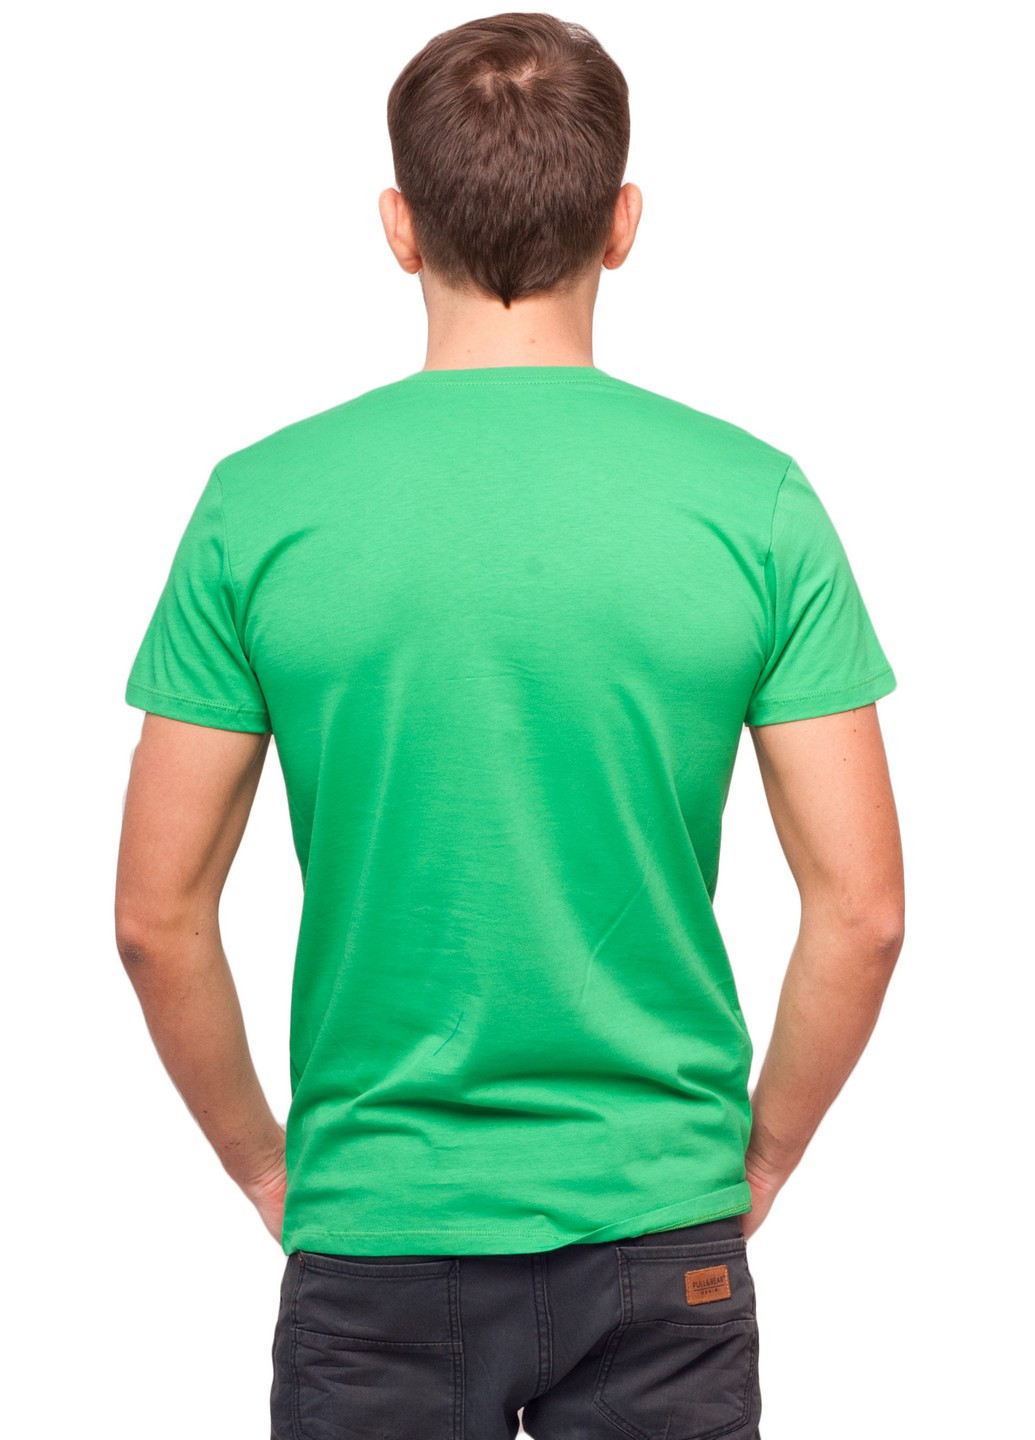 Зелена футболка чоловіча Наталюкс 12-1338